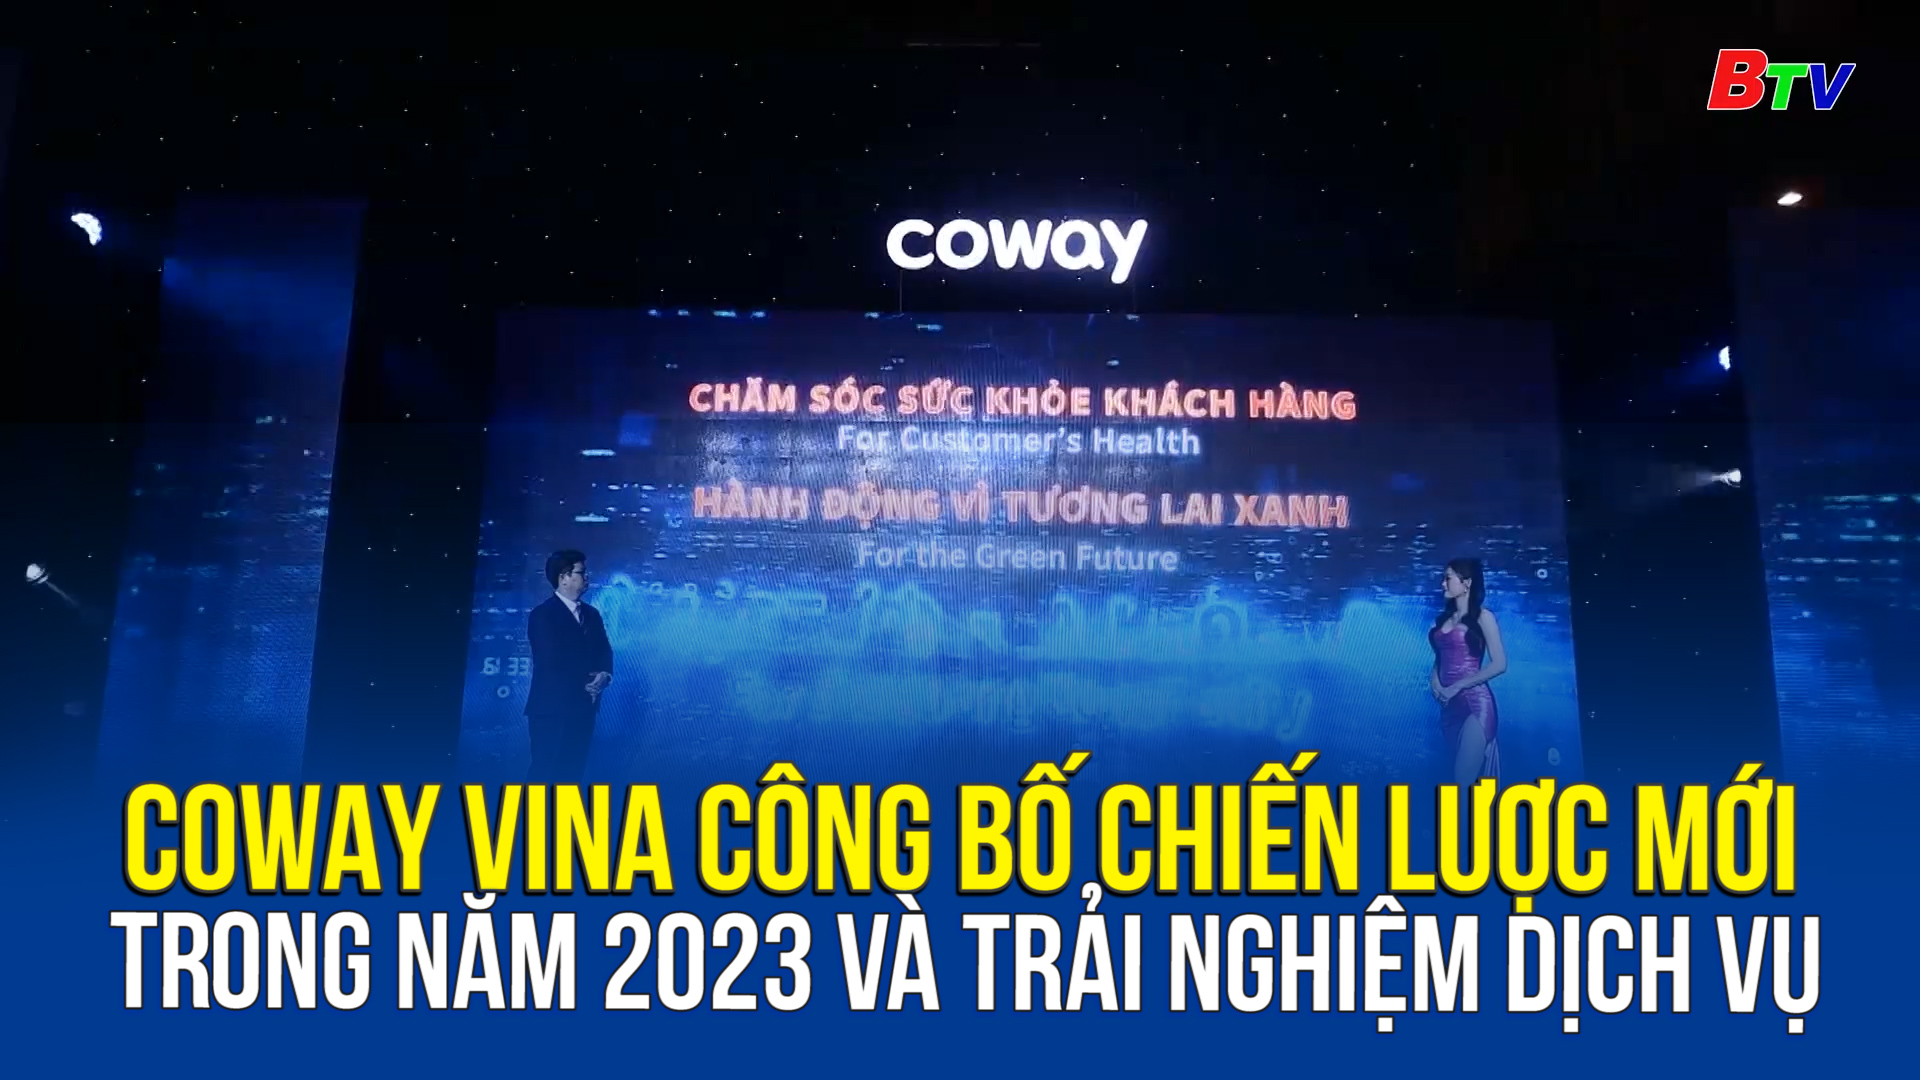 COWAY VINA công bố chiến lược mới trong năm 2023 và trải nghiệm dịch vụ